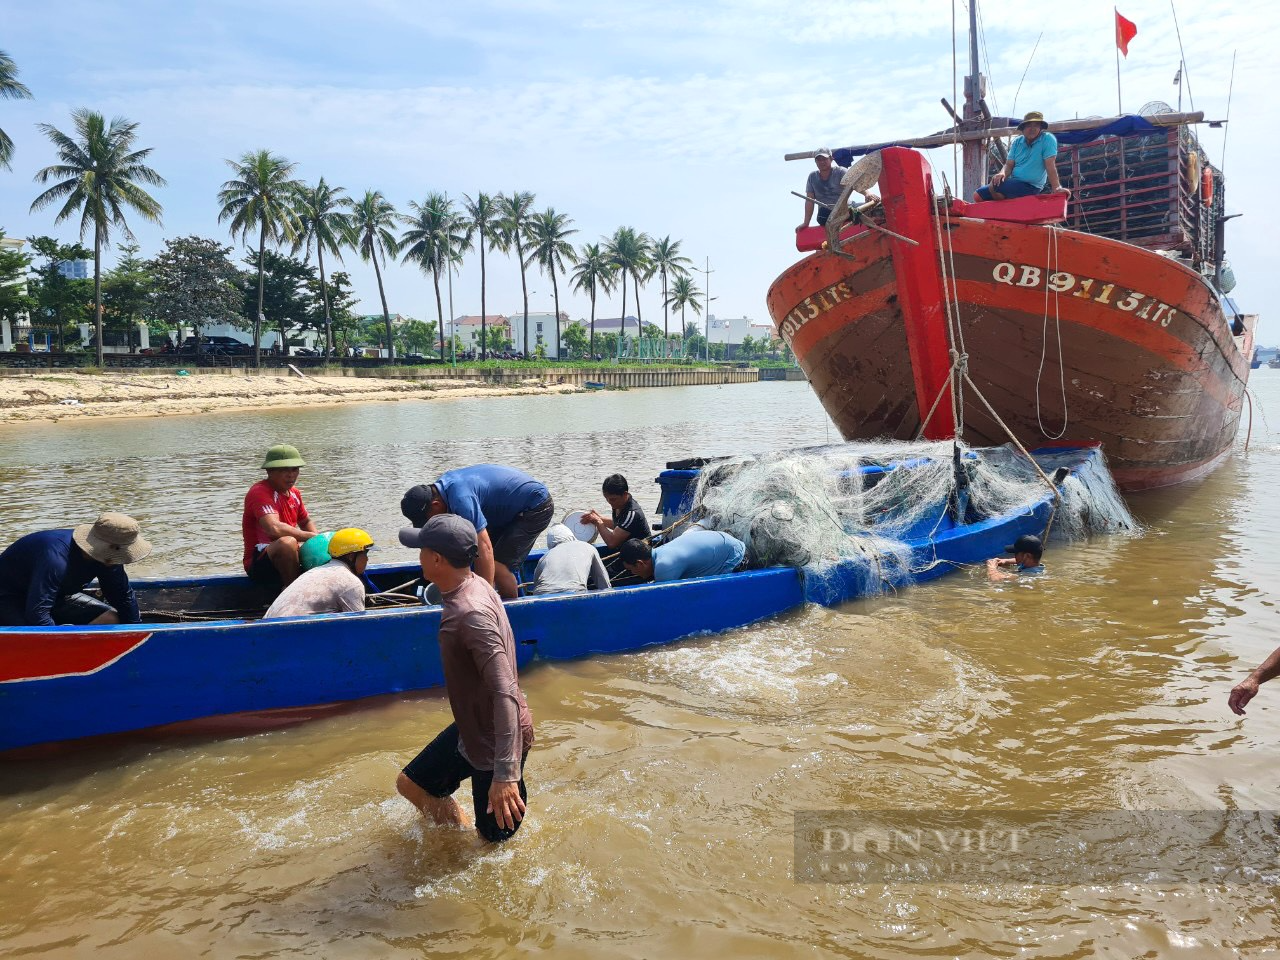 Quảng Bình: Lật thuyền khi ra khơi đánh cá, 2 ngư dân bơi hơn 1km vào bờ - Ảnh 2.